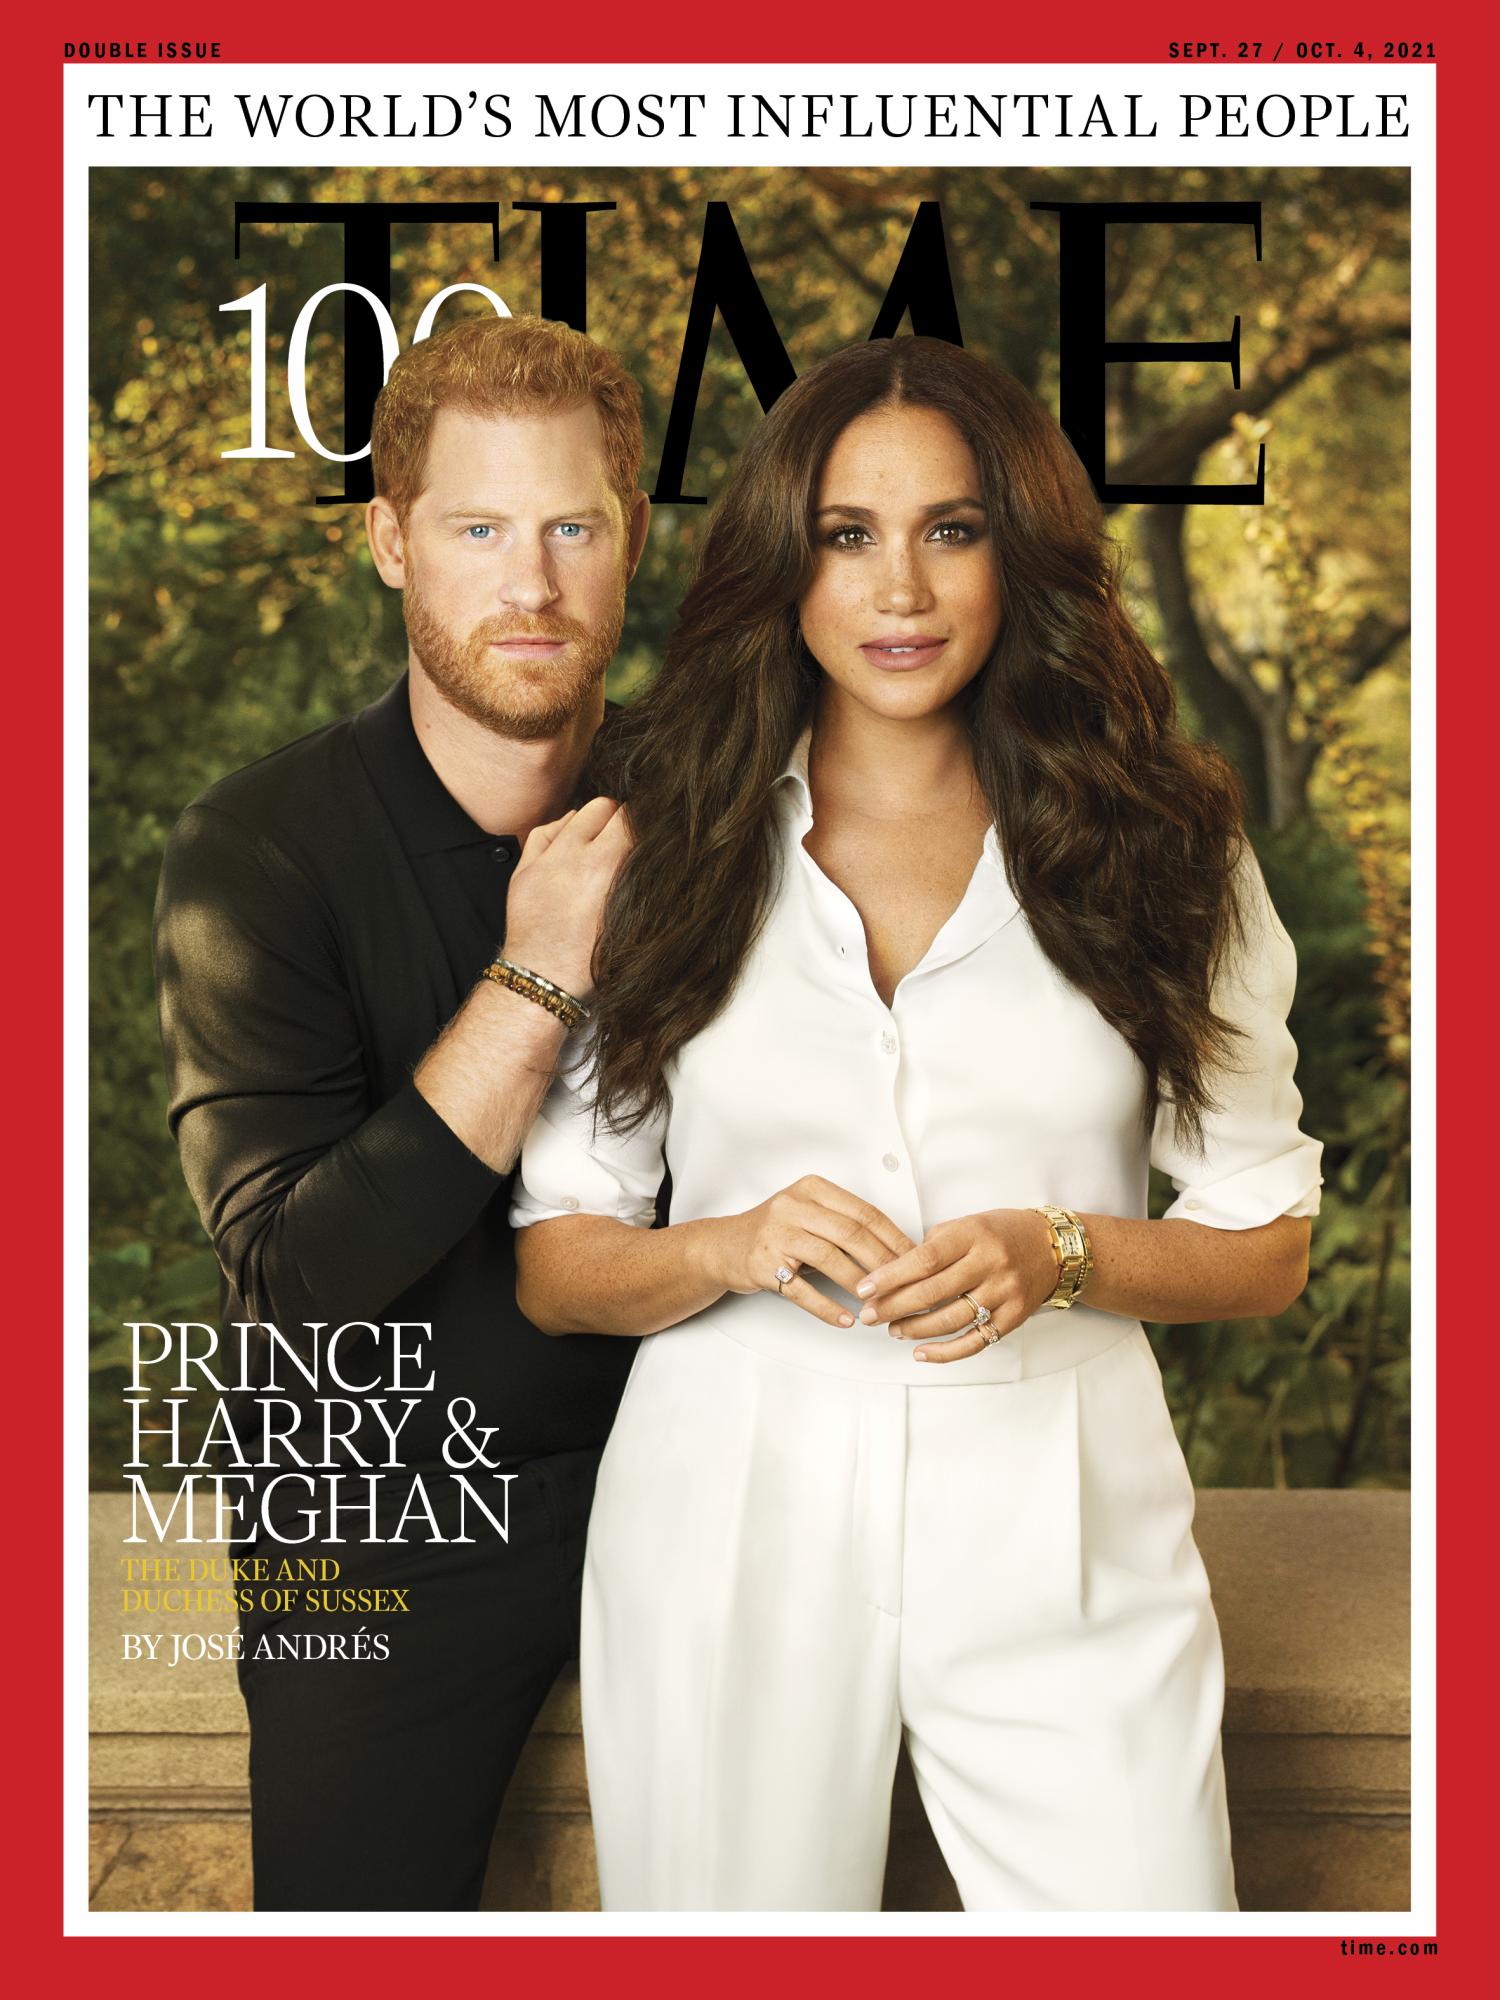 $!Meghan y su esposo, el Príncipe Harry, se casaron en 2018.